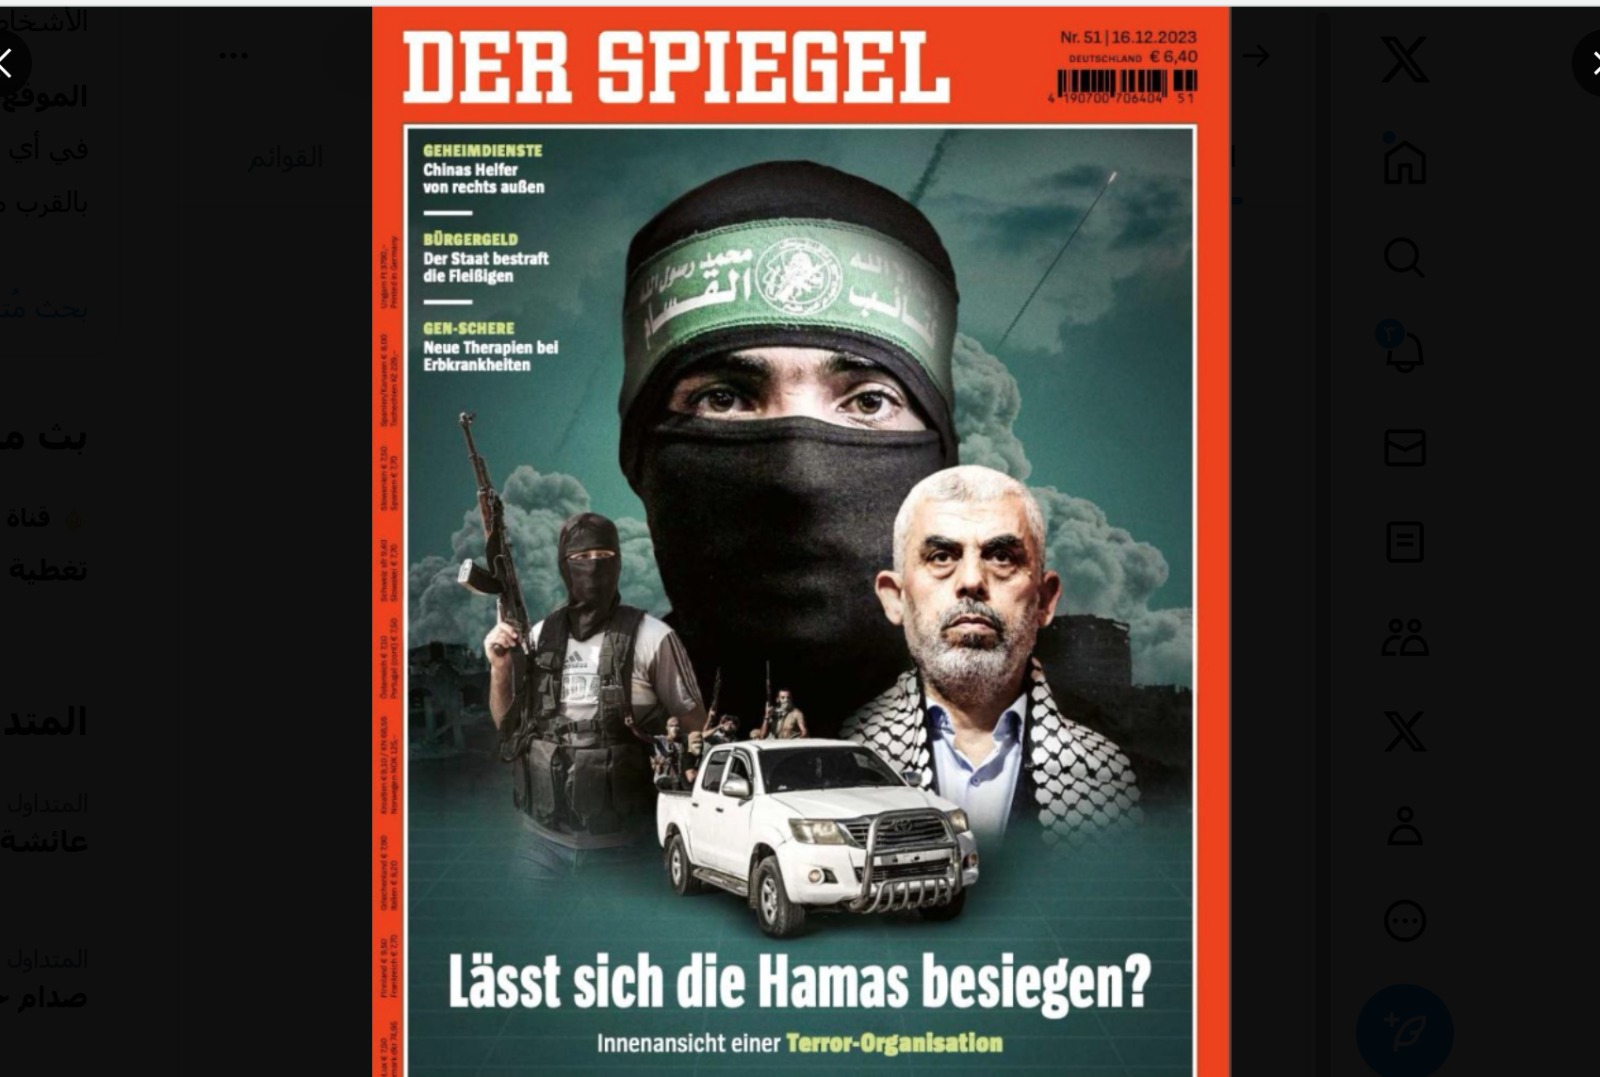 حمل صور السنوار والقسّام.. تفاعل واسع مع غلاف “ديرشبيغل” المشكك بإمكانية هزيمة حماس